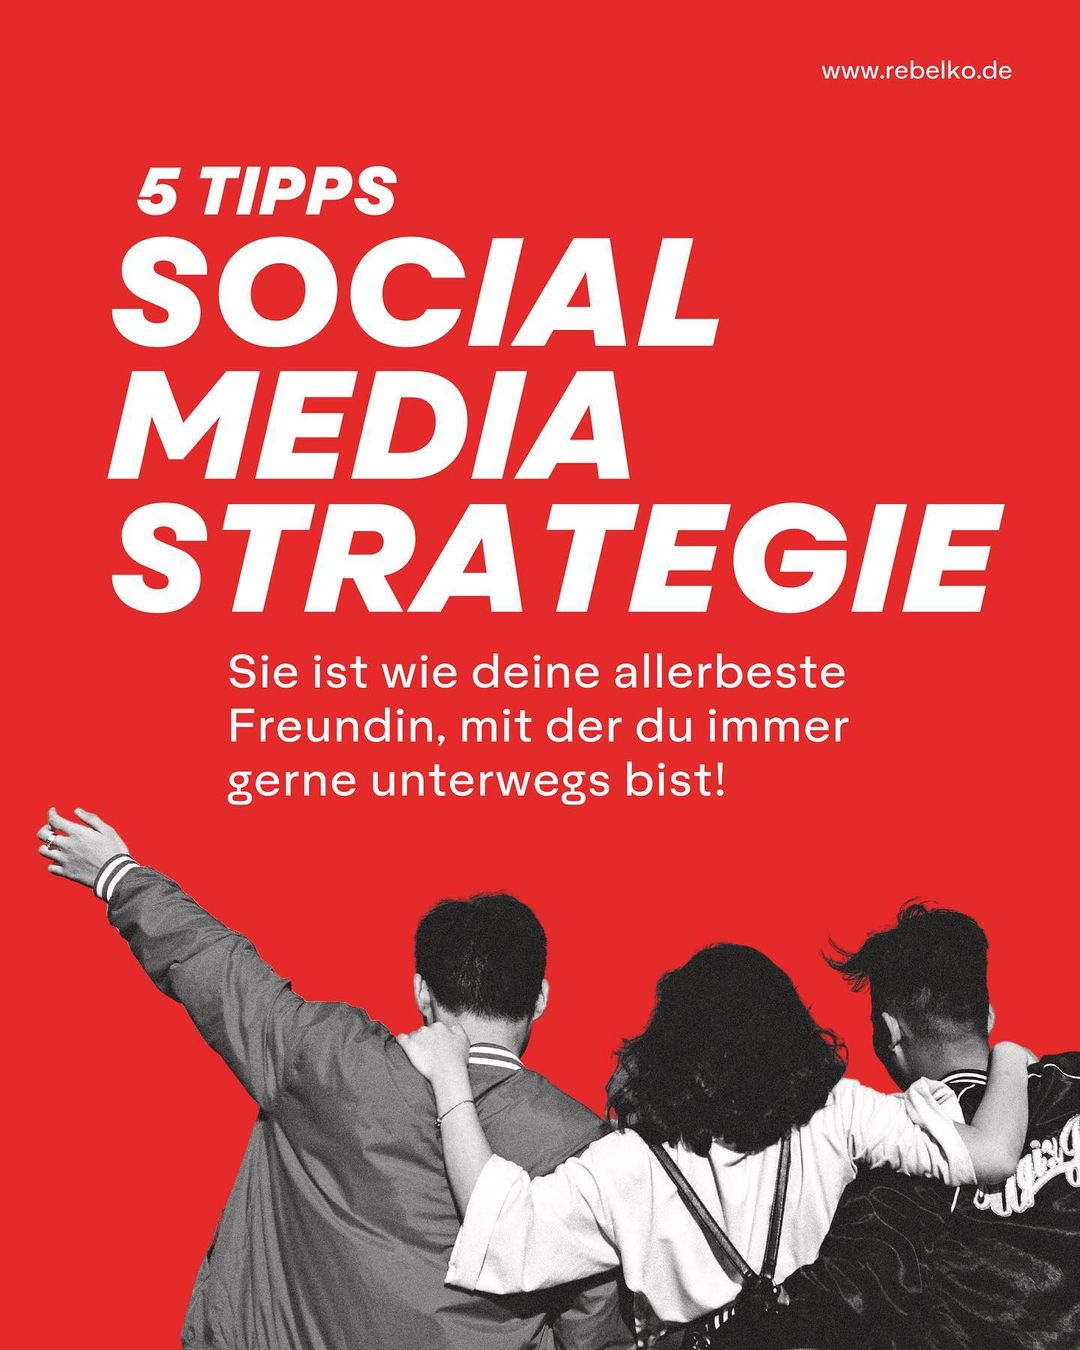 5 tipps fuer eine erfolgreiche social media strategie REBELKO Agentur Aachen Marketing  Design Kreativ Strategie Social Media Konzeption Beratung Creatives Digital 01